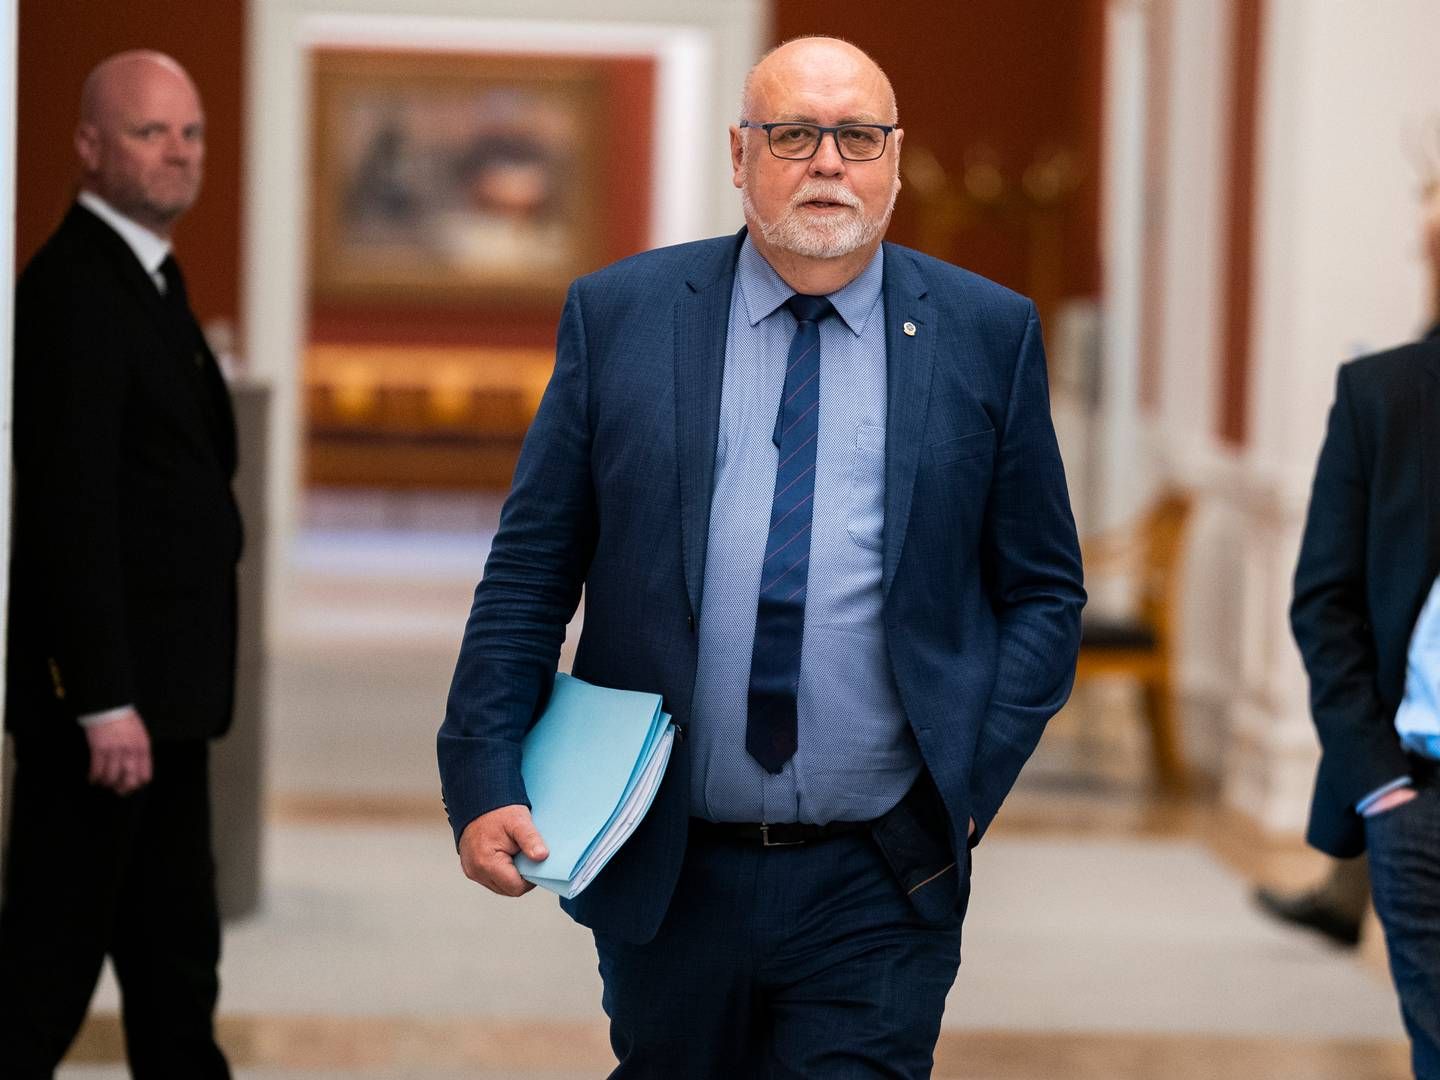 Transportordfører hos Venstre, Kristian Pihl Lorentzen, har været blandt drivkræfterne i at bevare 11 kg-reglen. | Foto: Martin Sylvest/Ritzau Scanpix